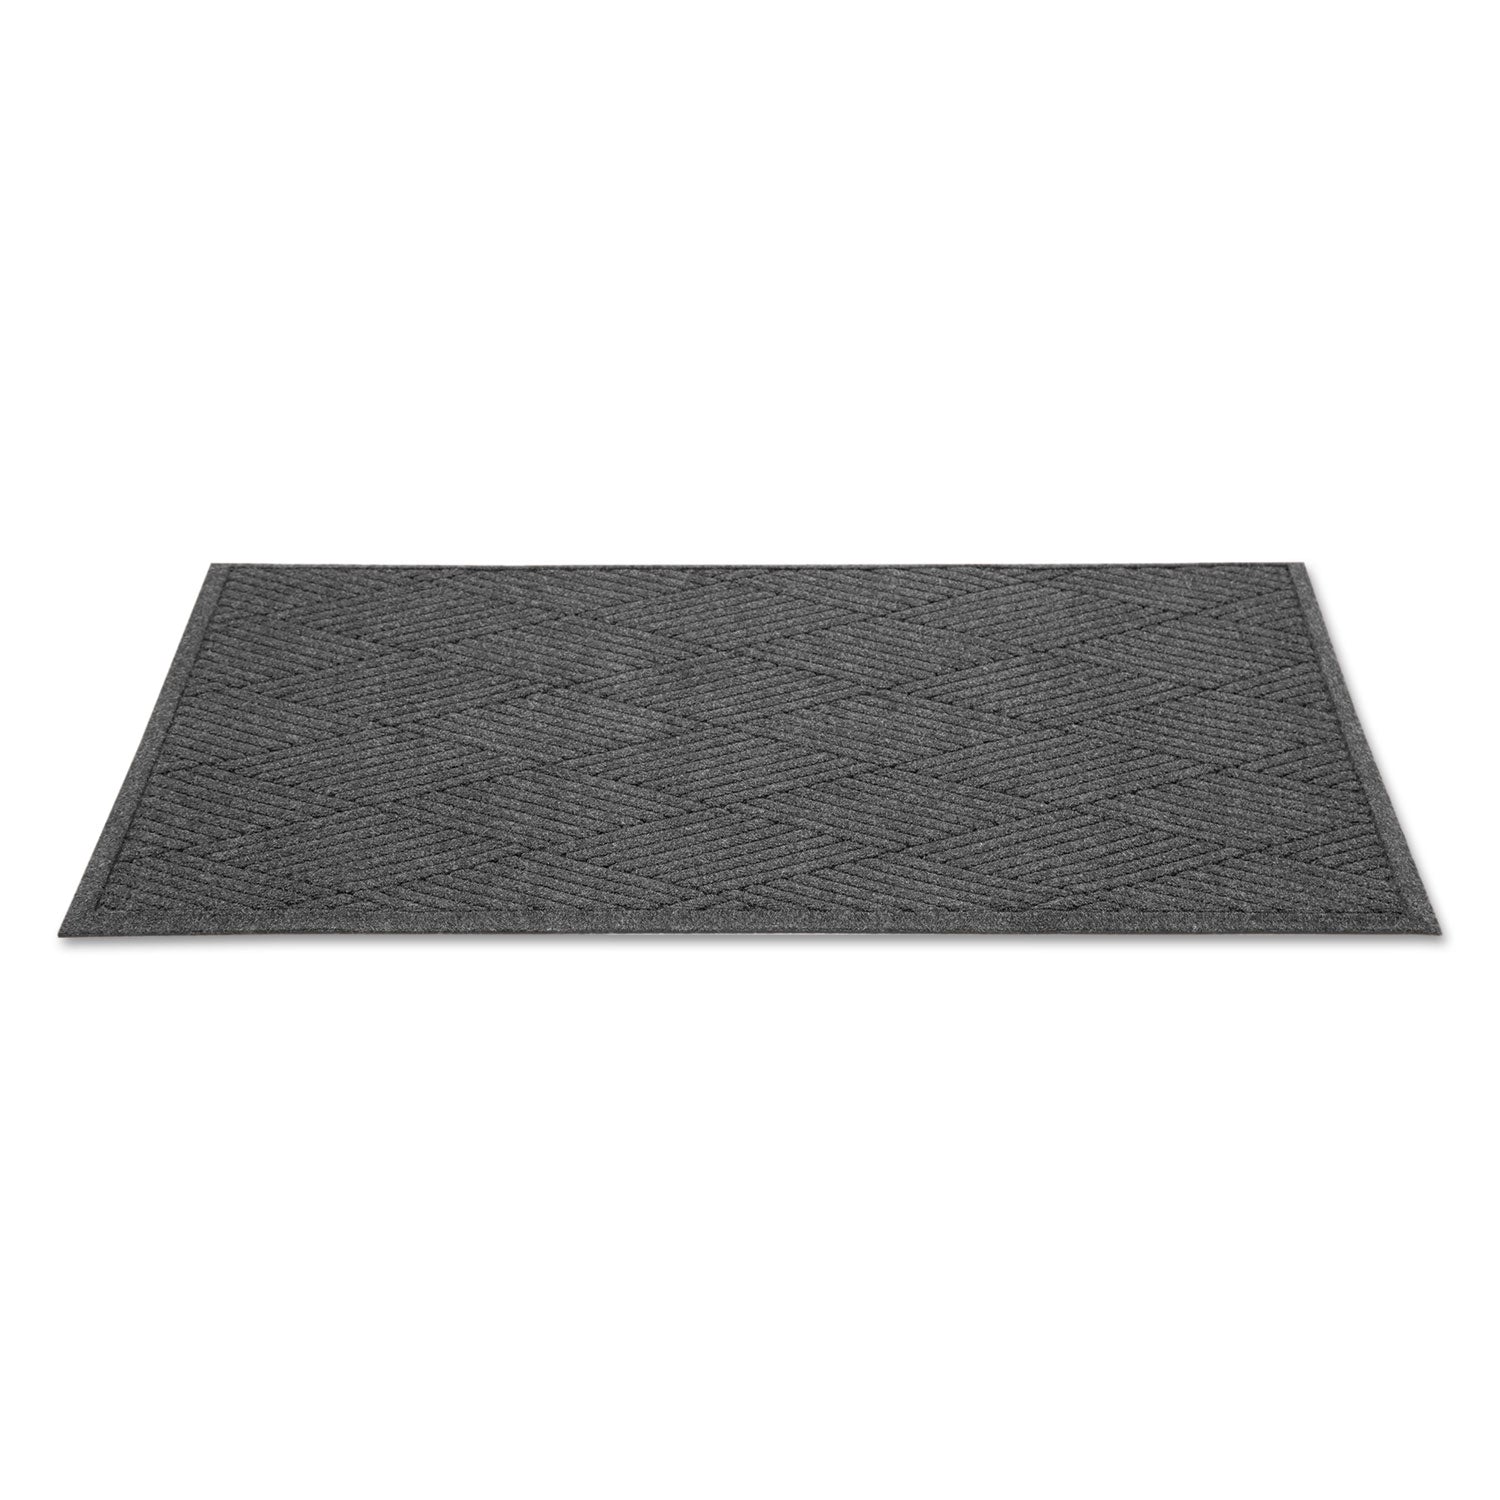 EcoGuard Diamond Floor Mat, Rectangular, 36 x 120, Charcoal - 